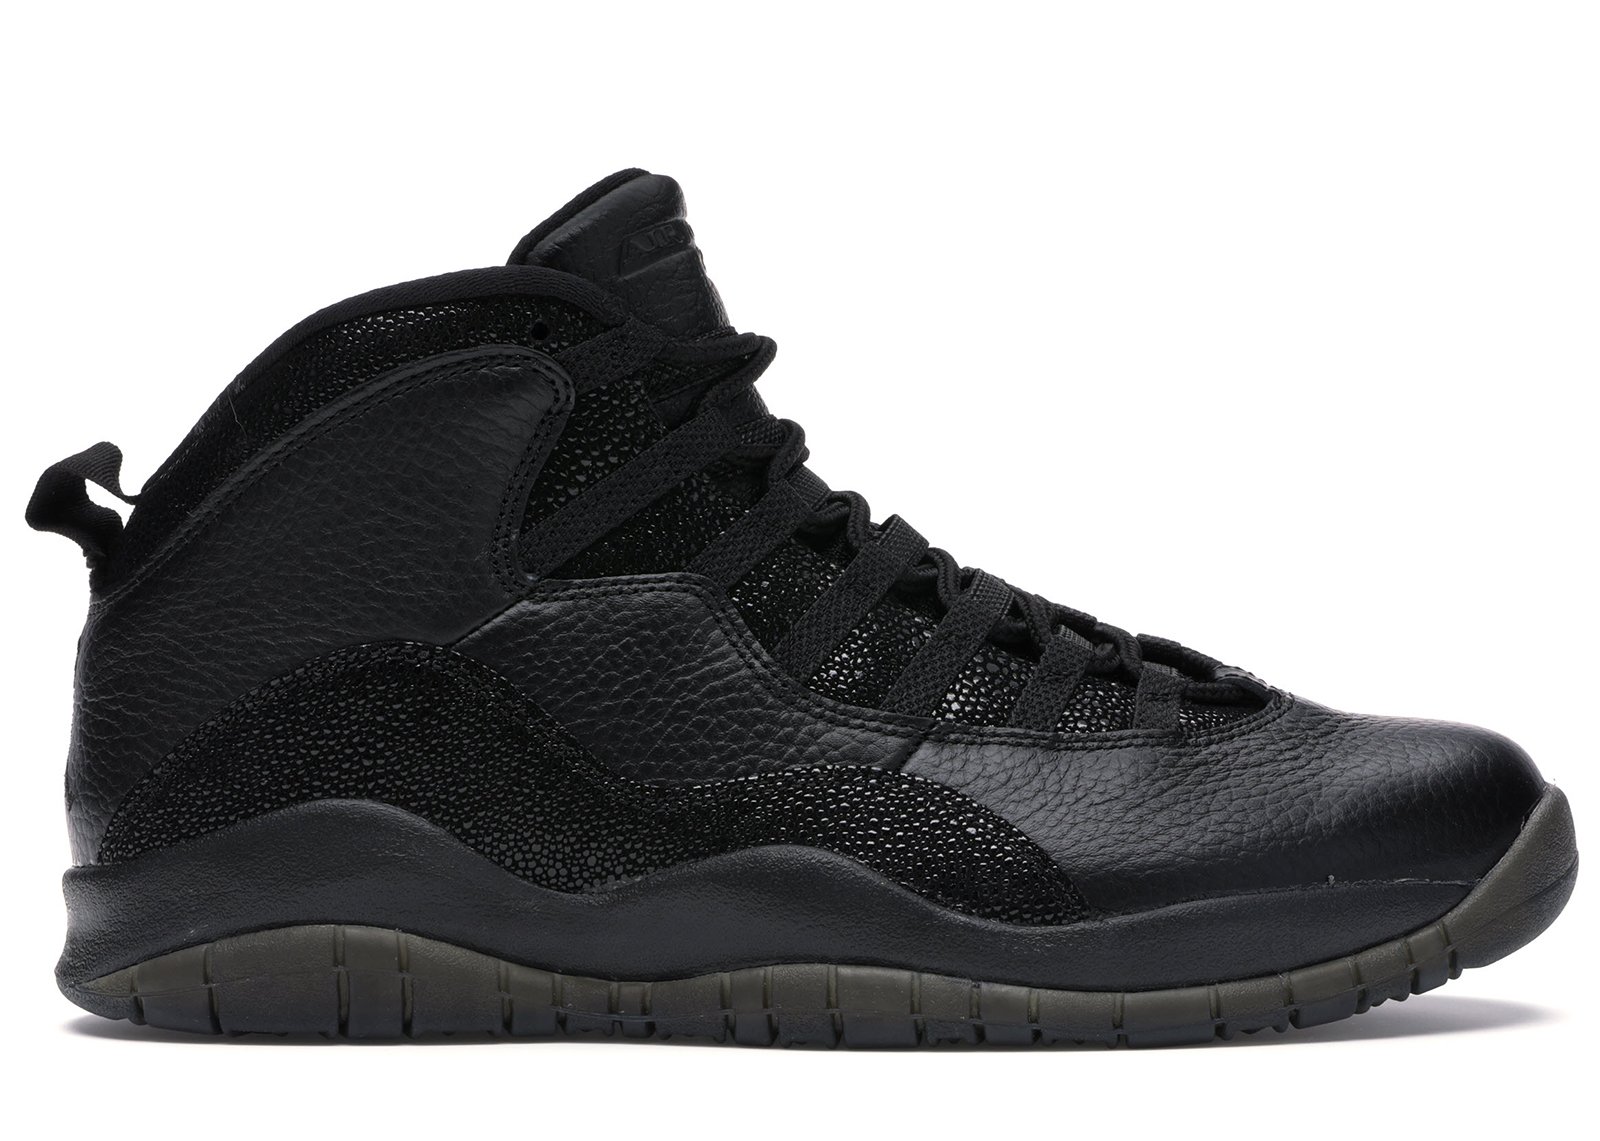 Jordan 10 Retro Drake OVO Black sneakers